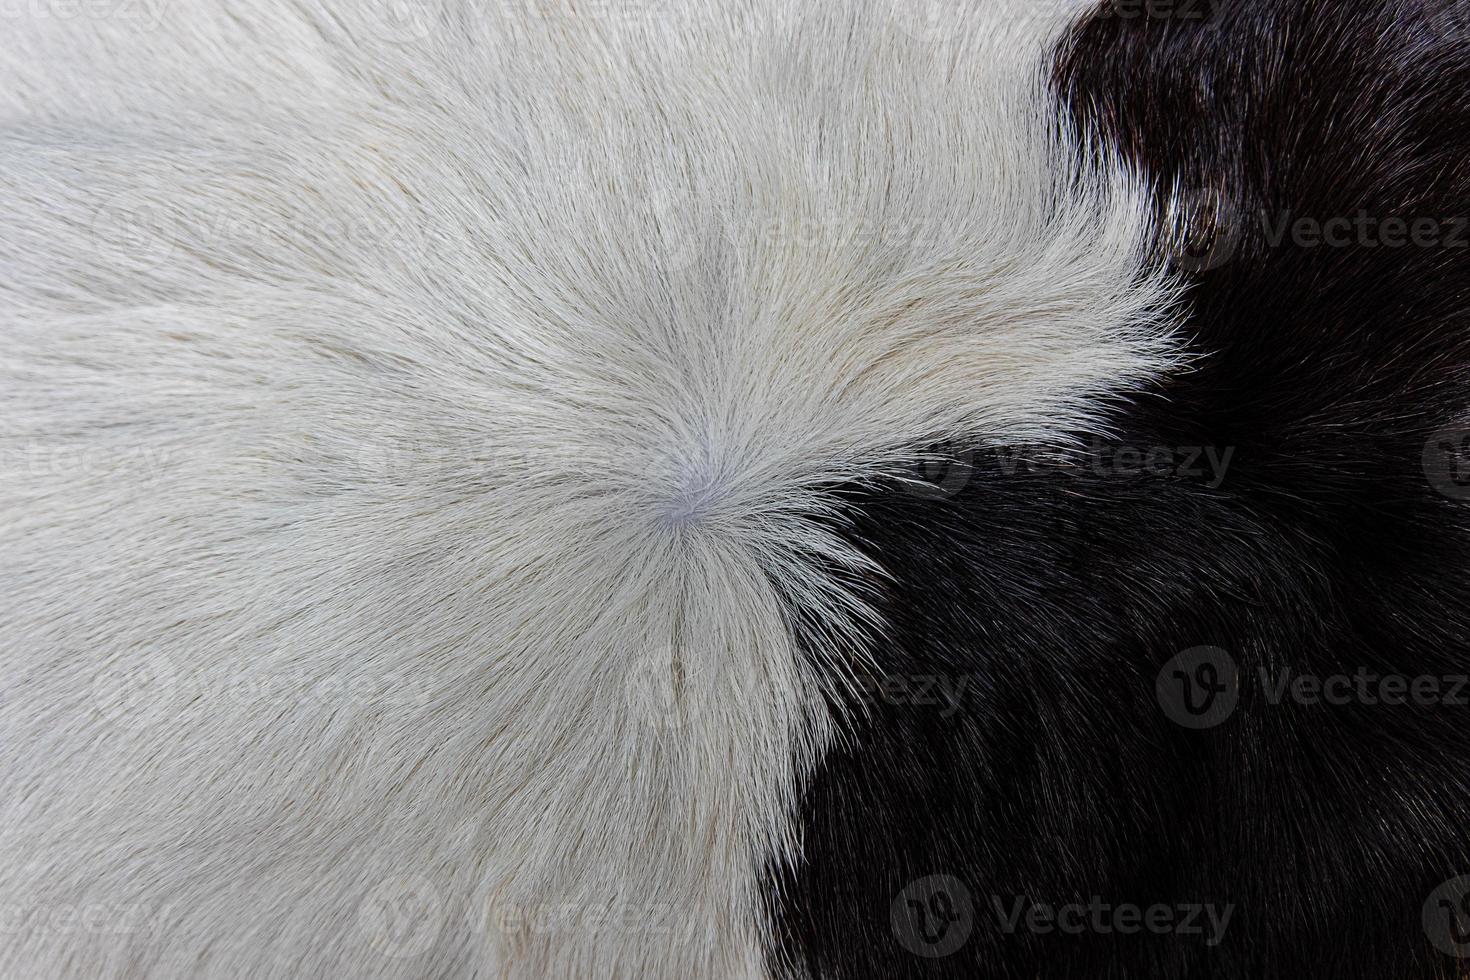 casaco de pele de vaca marrom com pelo preto branco e manchas marrons foto